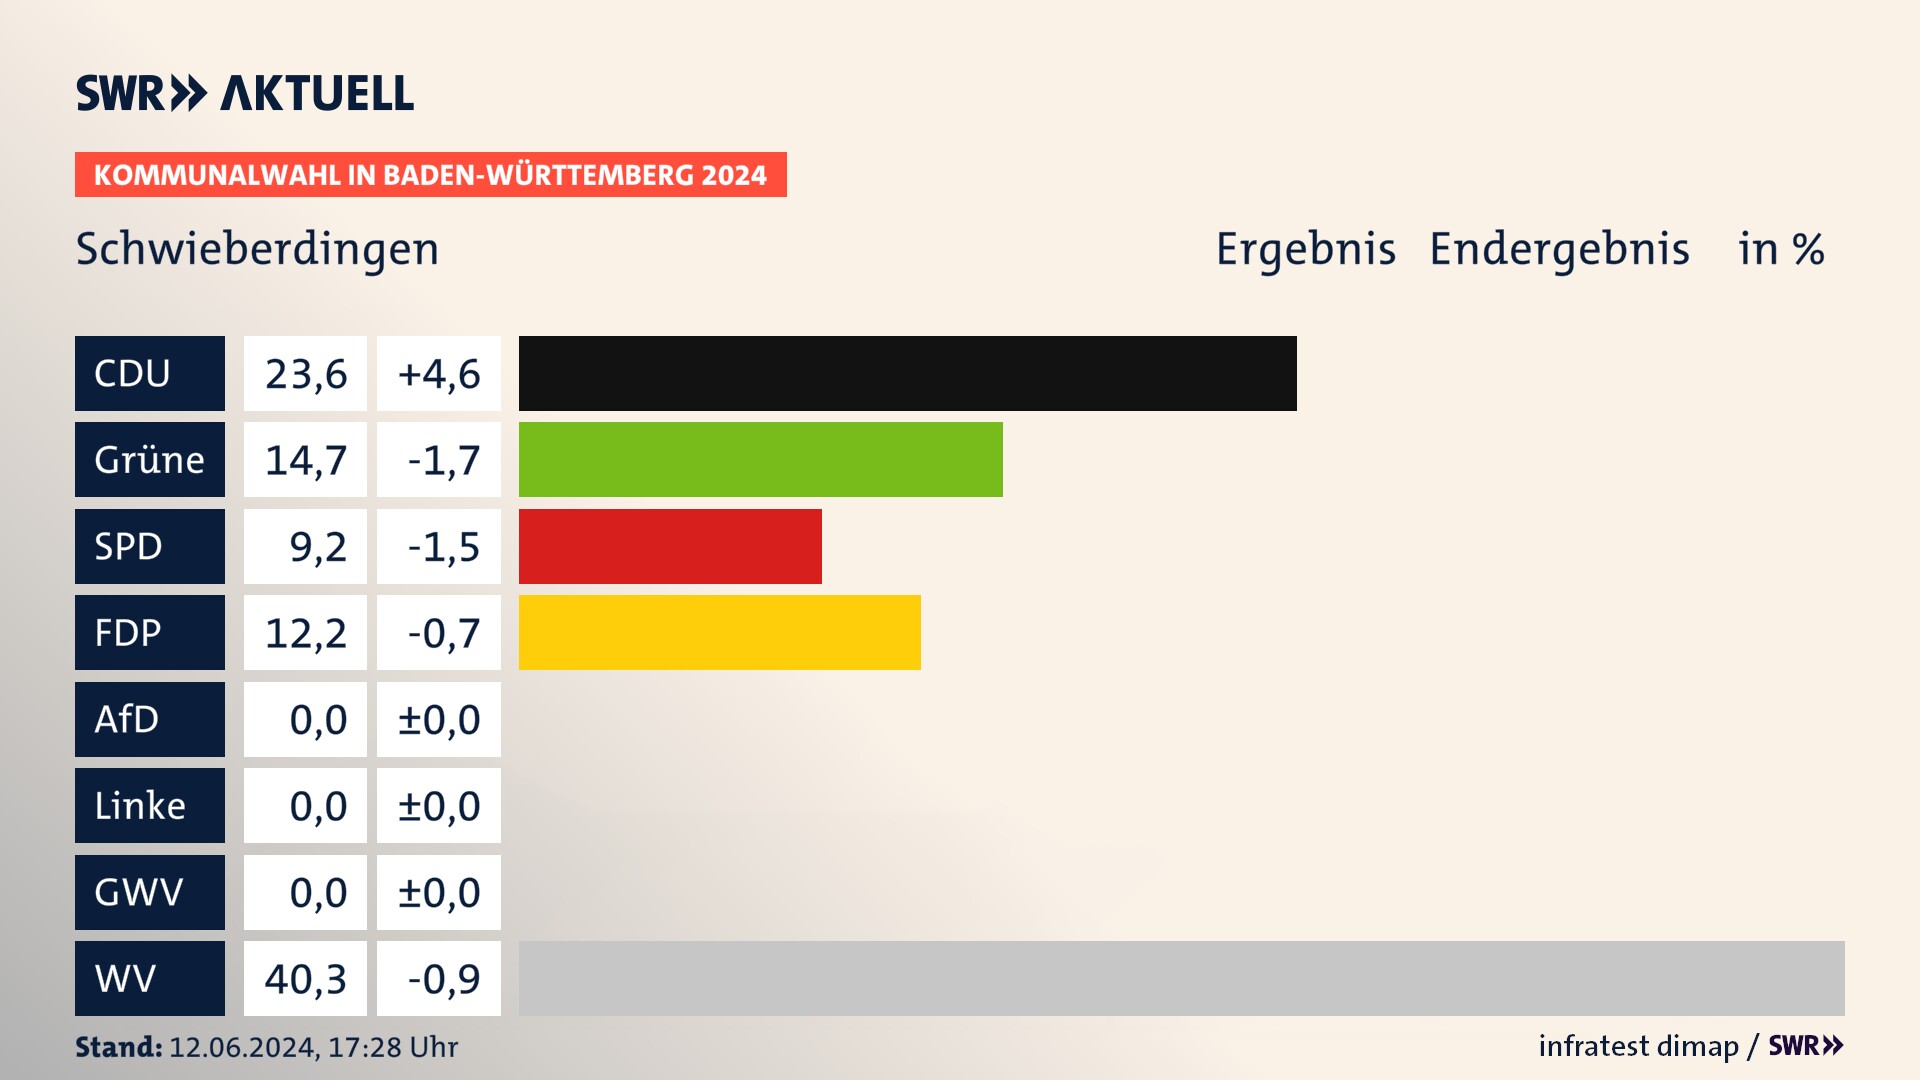 Kommunalwahl 2024 Endergebnis Zweitstimme für Schwieberdingen. In Schwieberdingen erzielt die CDU 23,6 Prozent der gültigen  Stimmen. Die Grünen landen bei 14,7 Prozent. Die SPD erreicht 9,2 Prozent. Die FDP kommt auf 12,2 Prozent. Die Wählervereinigungen landen bei 40,3 Prozent.